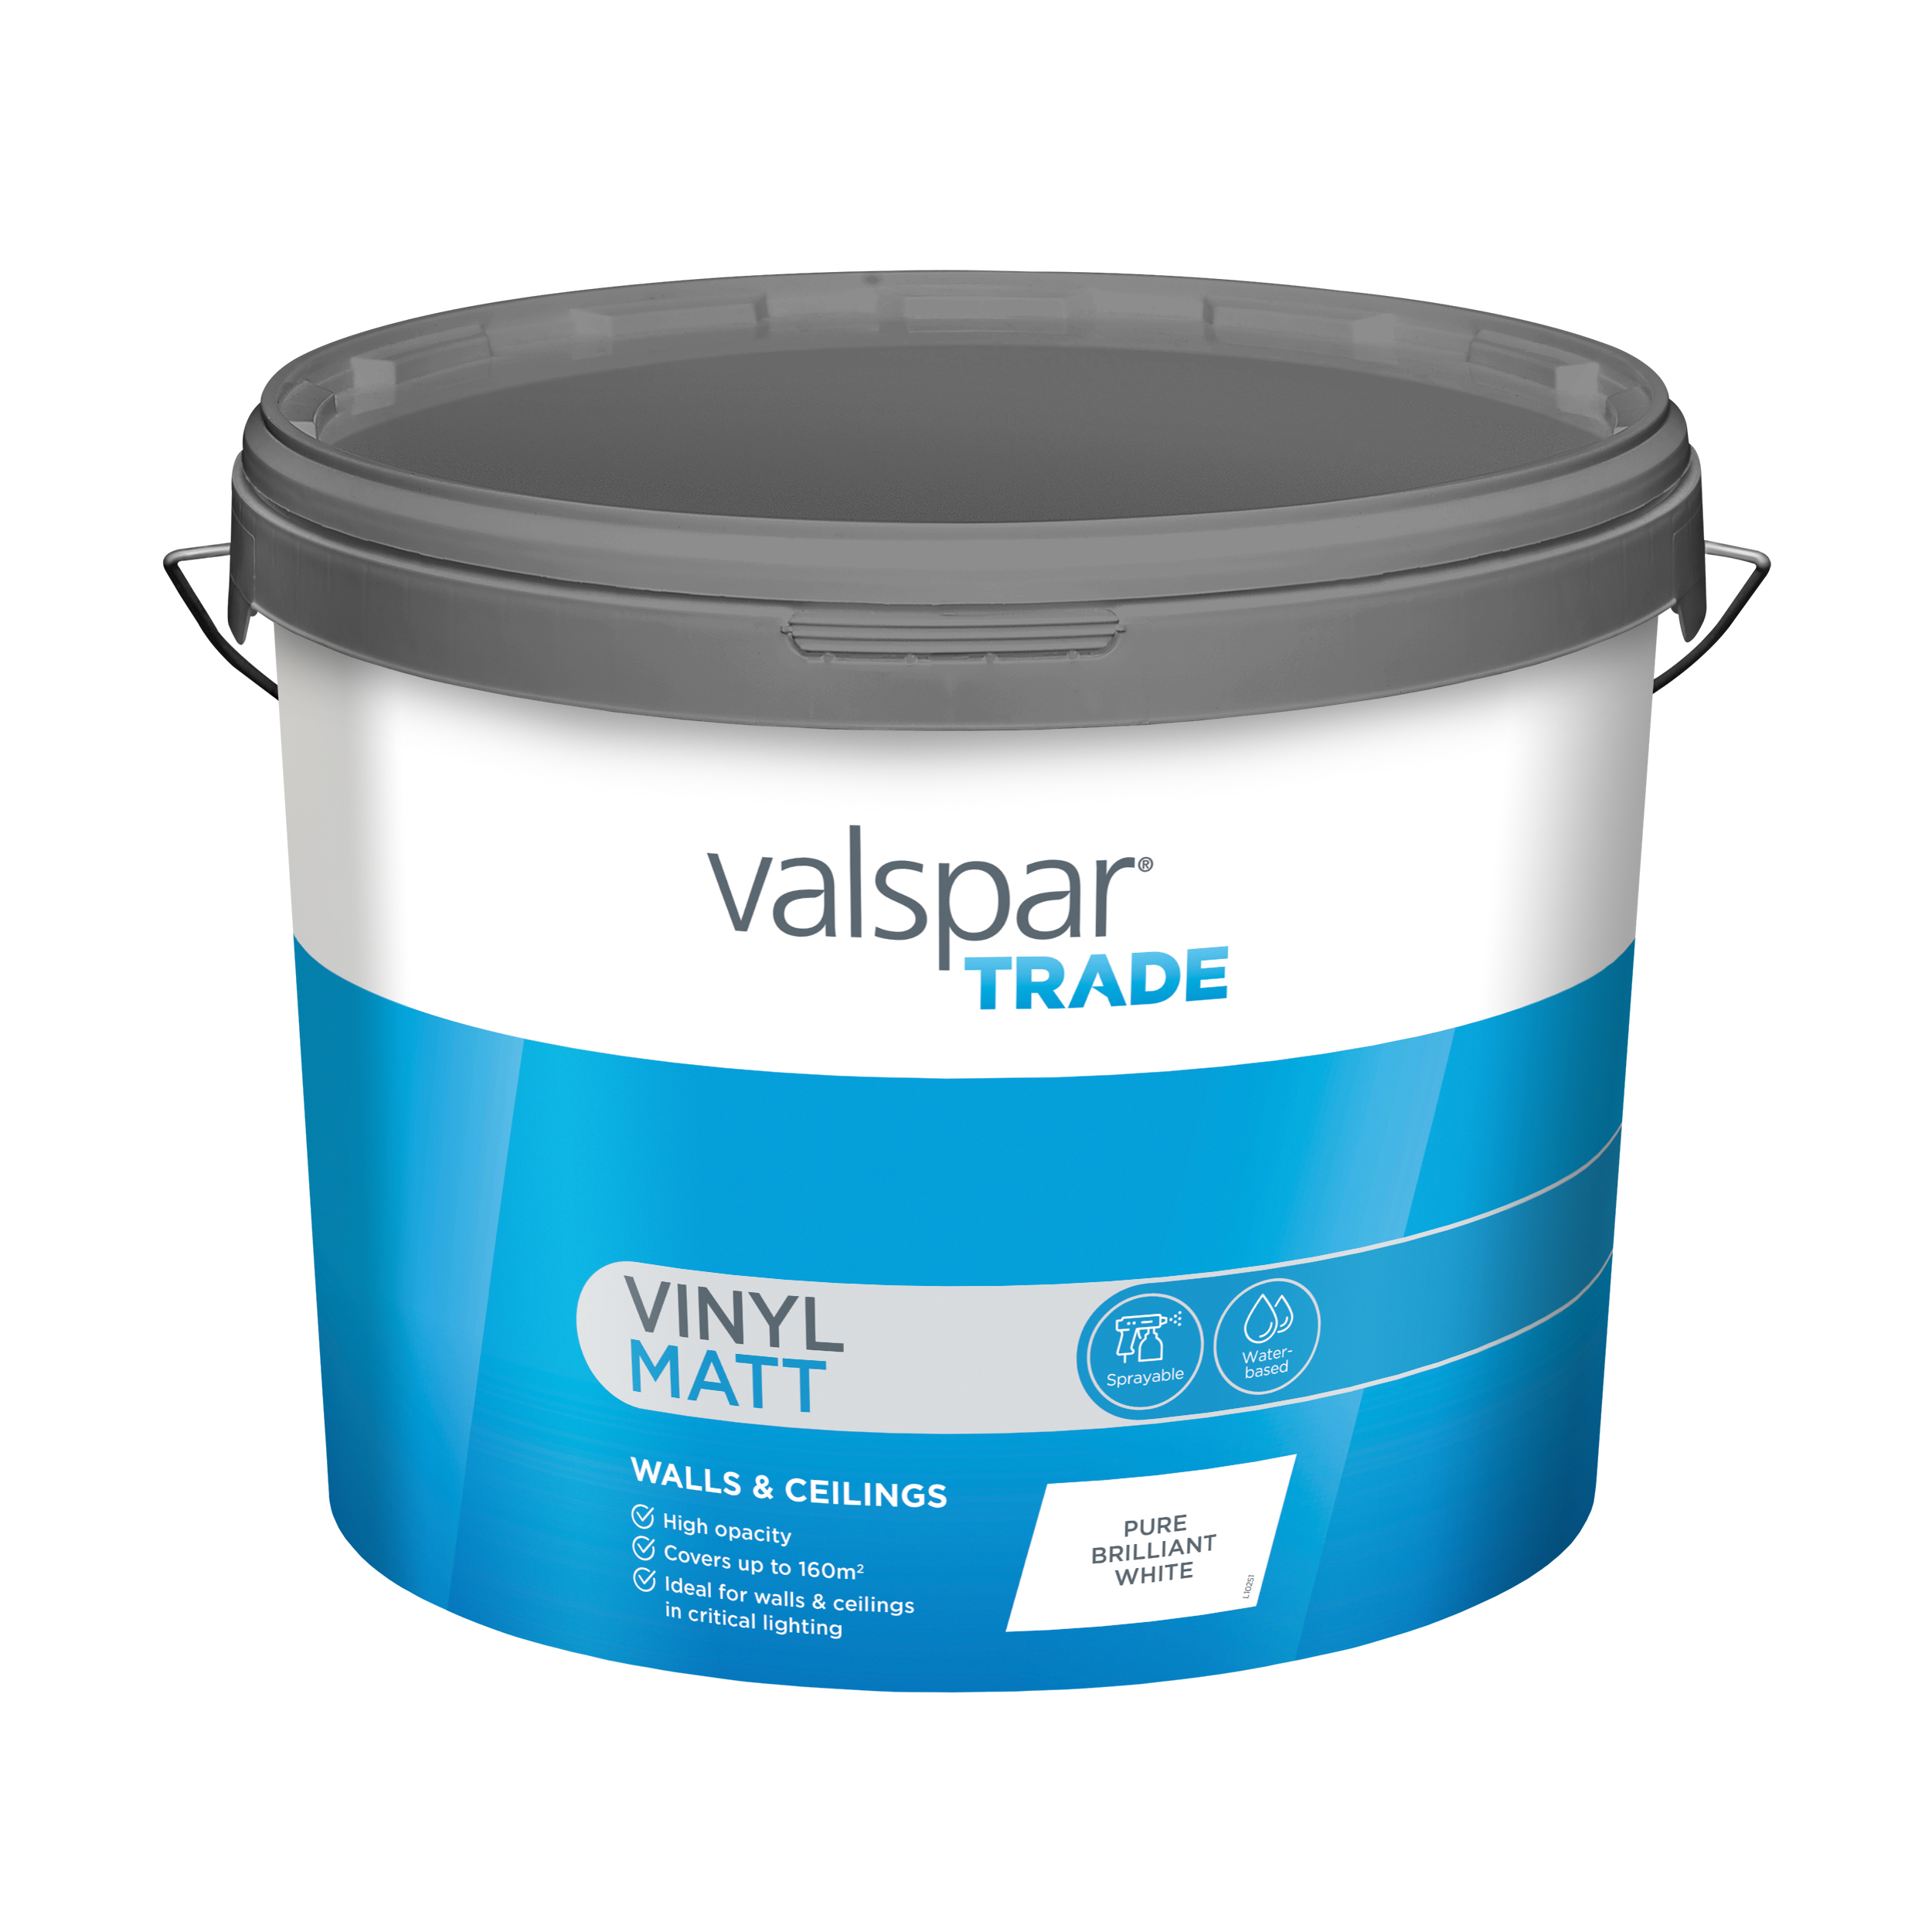 Valspar® Trade Vinyl Walls & Ceilings